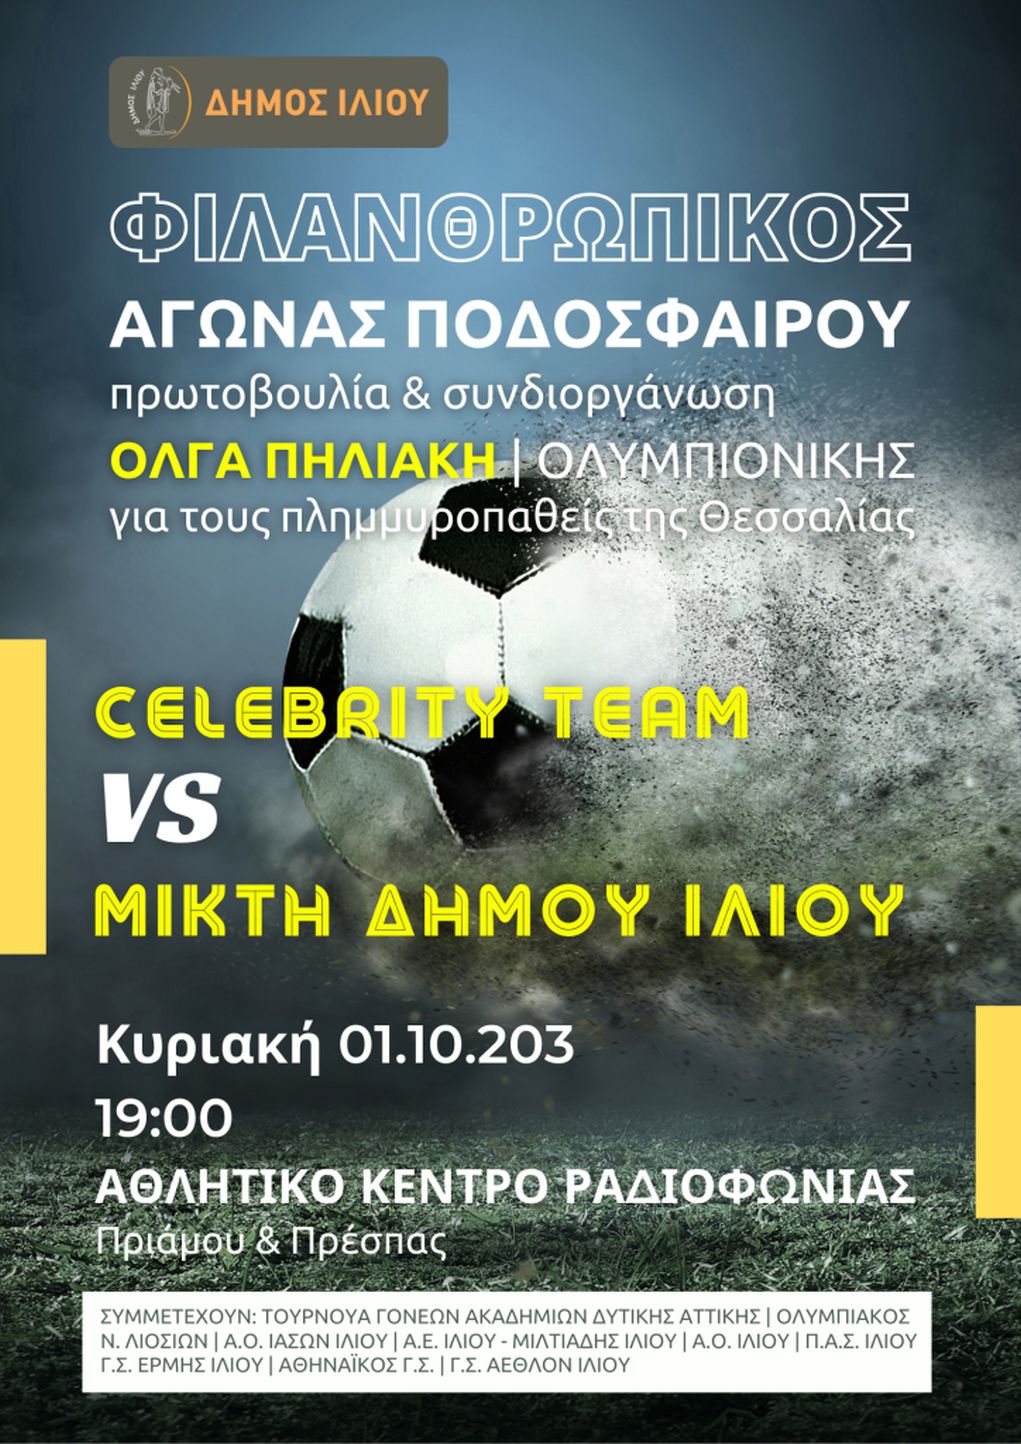 Αγώνας ποδοσφαίρου με Ολυμπιονίκες και Celebrities στο Ίλιον για τους πλημμυροπαθείς της Θεσσαλίας